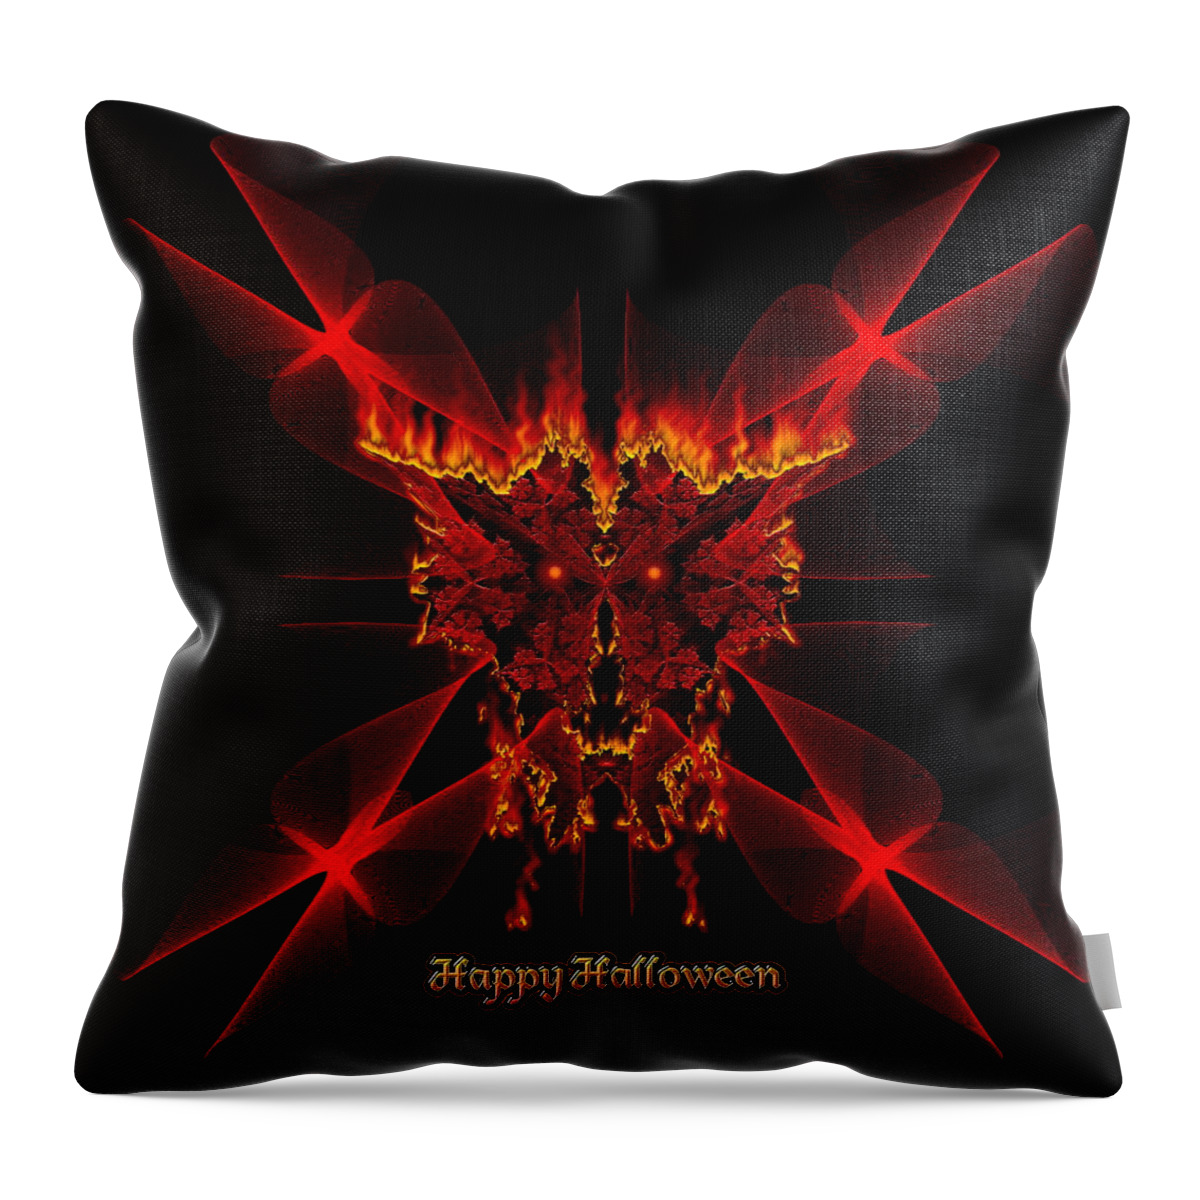 Halloween Throw Pillow featuring the digital art Happy Halloween SineDot Fractal Fire Demon by Rolando Burbon